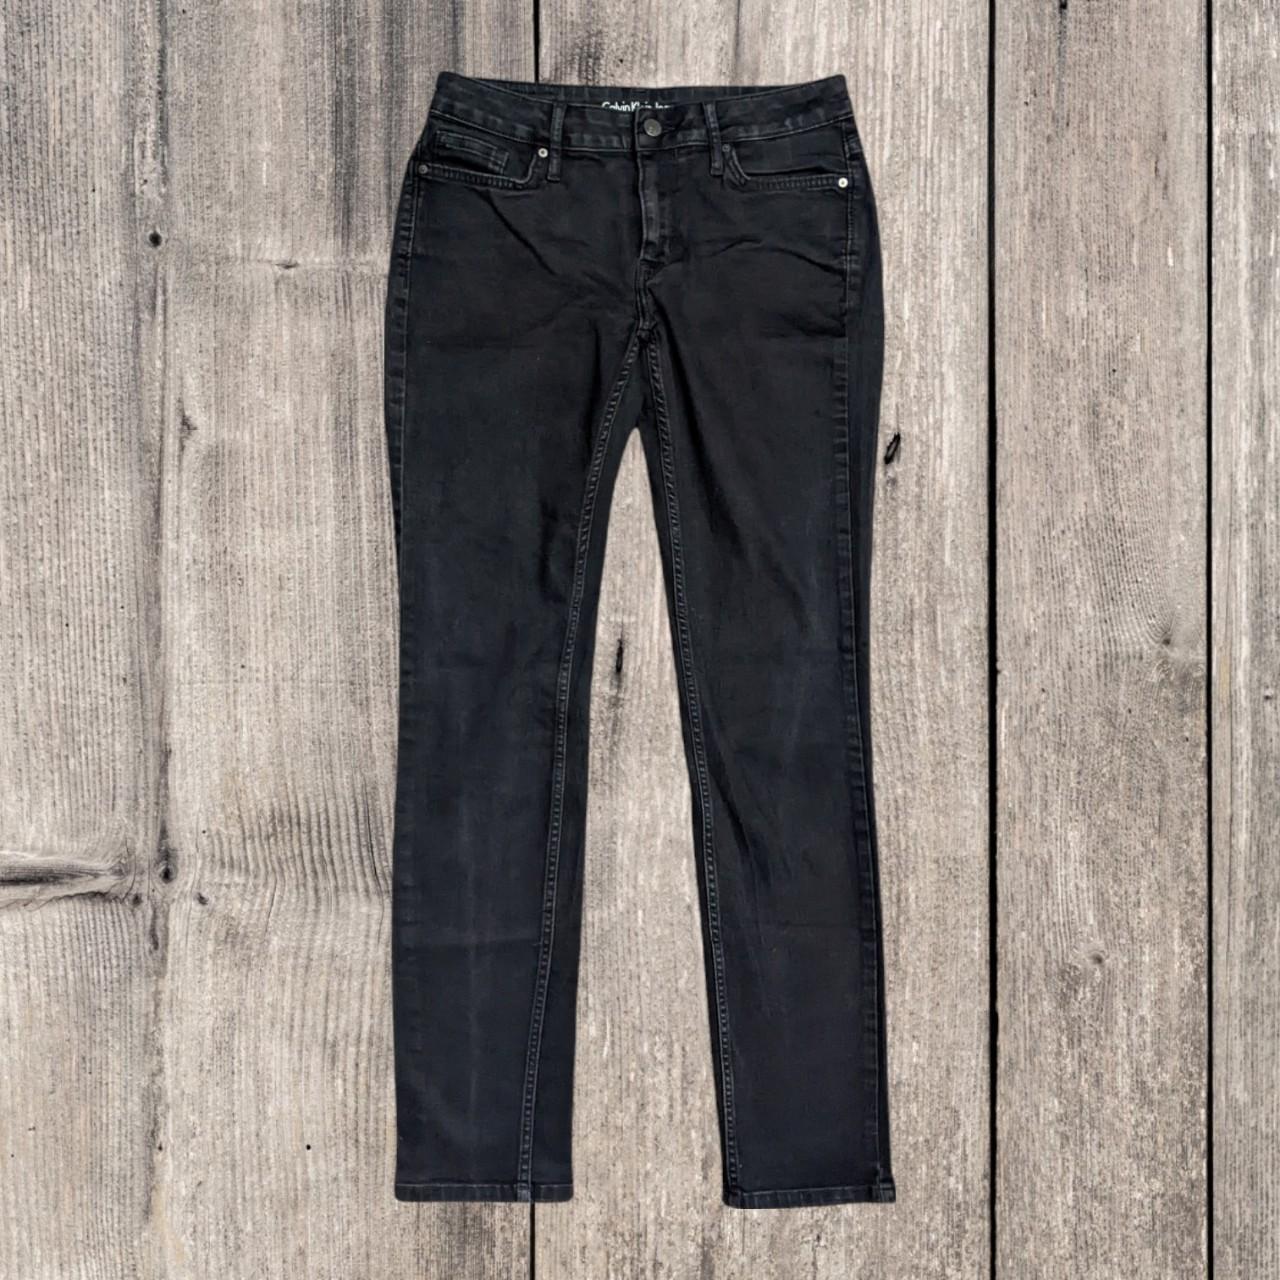 Women's Calvin Klein black jeans in an 'Ultimate... - Depop